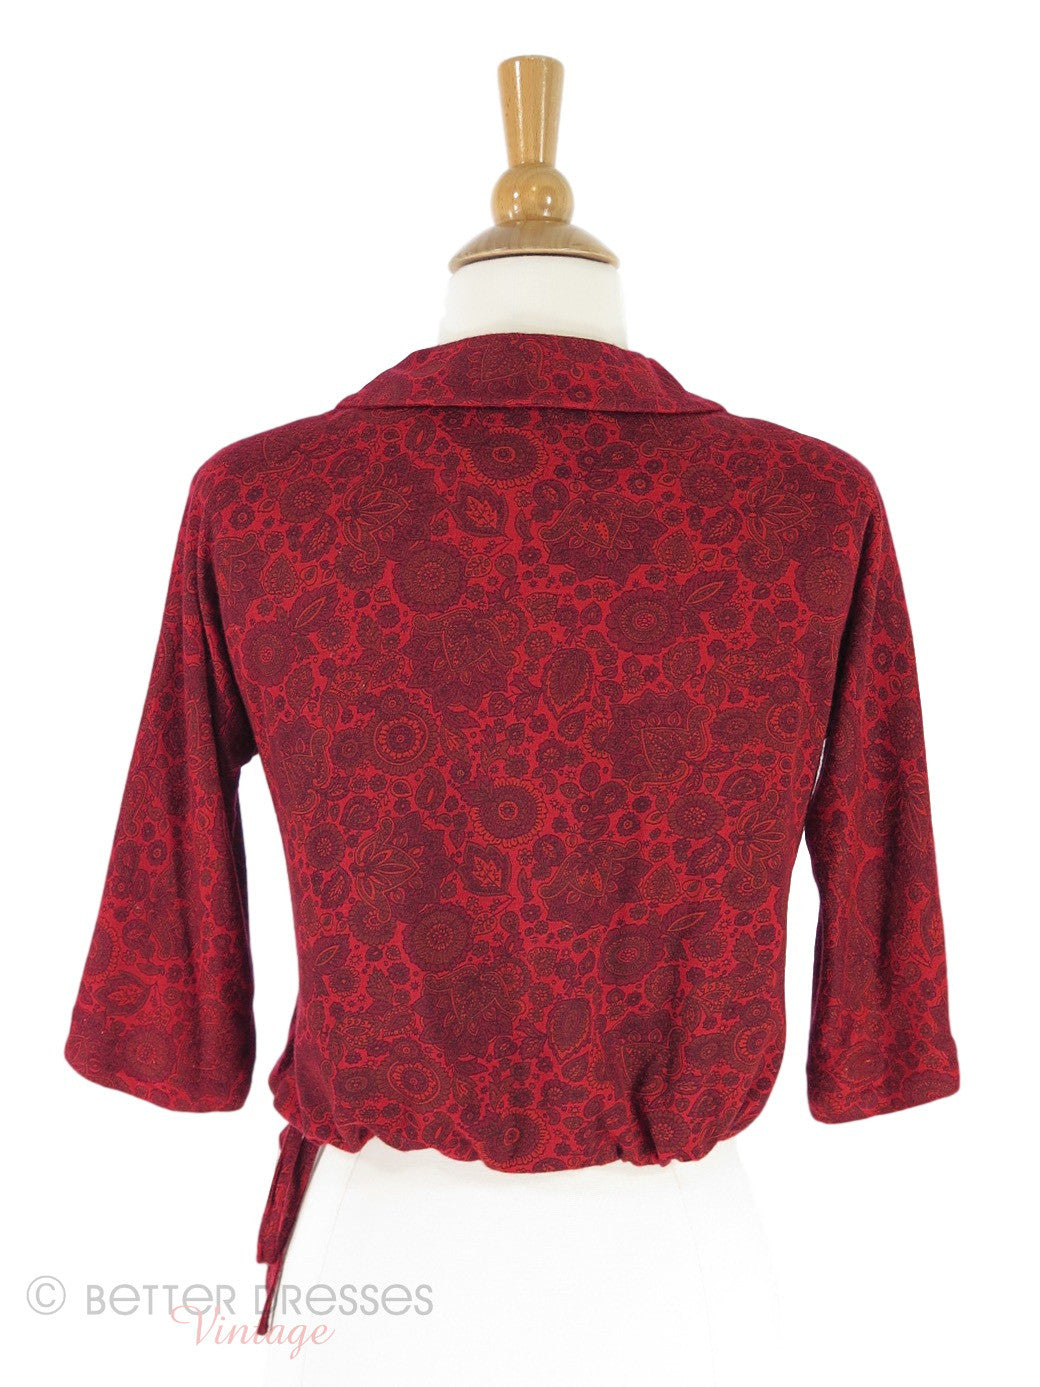 50s Red Drawstring Waist Knit Top - sm, med – Better Dresses Vintage